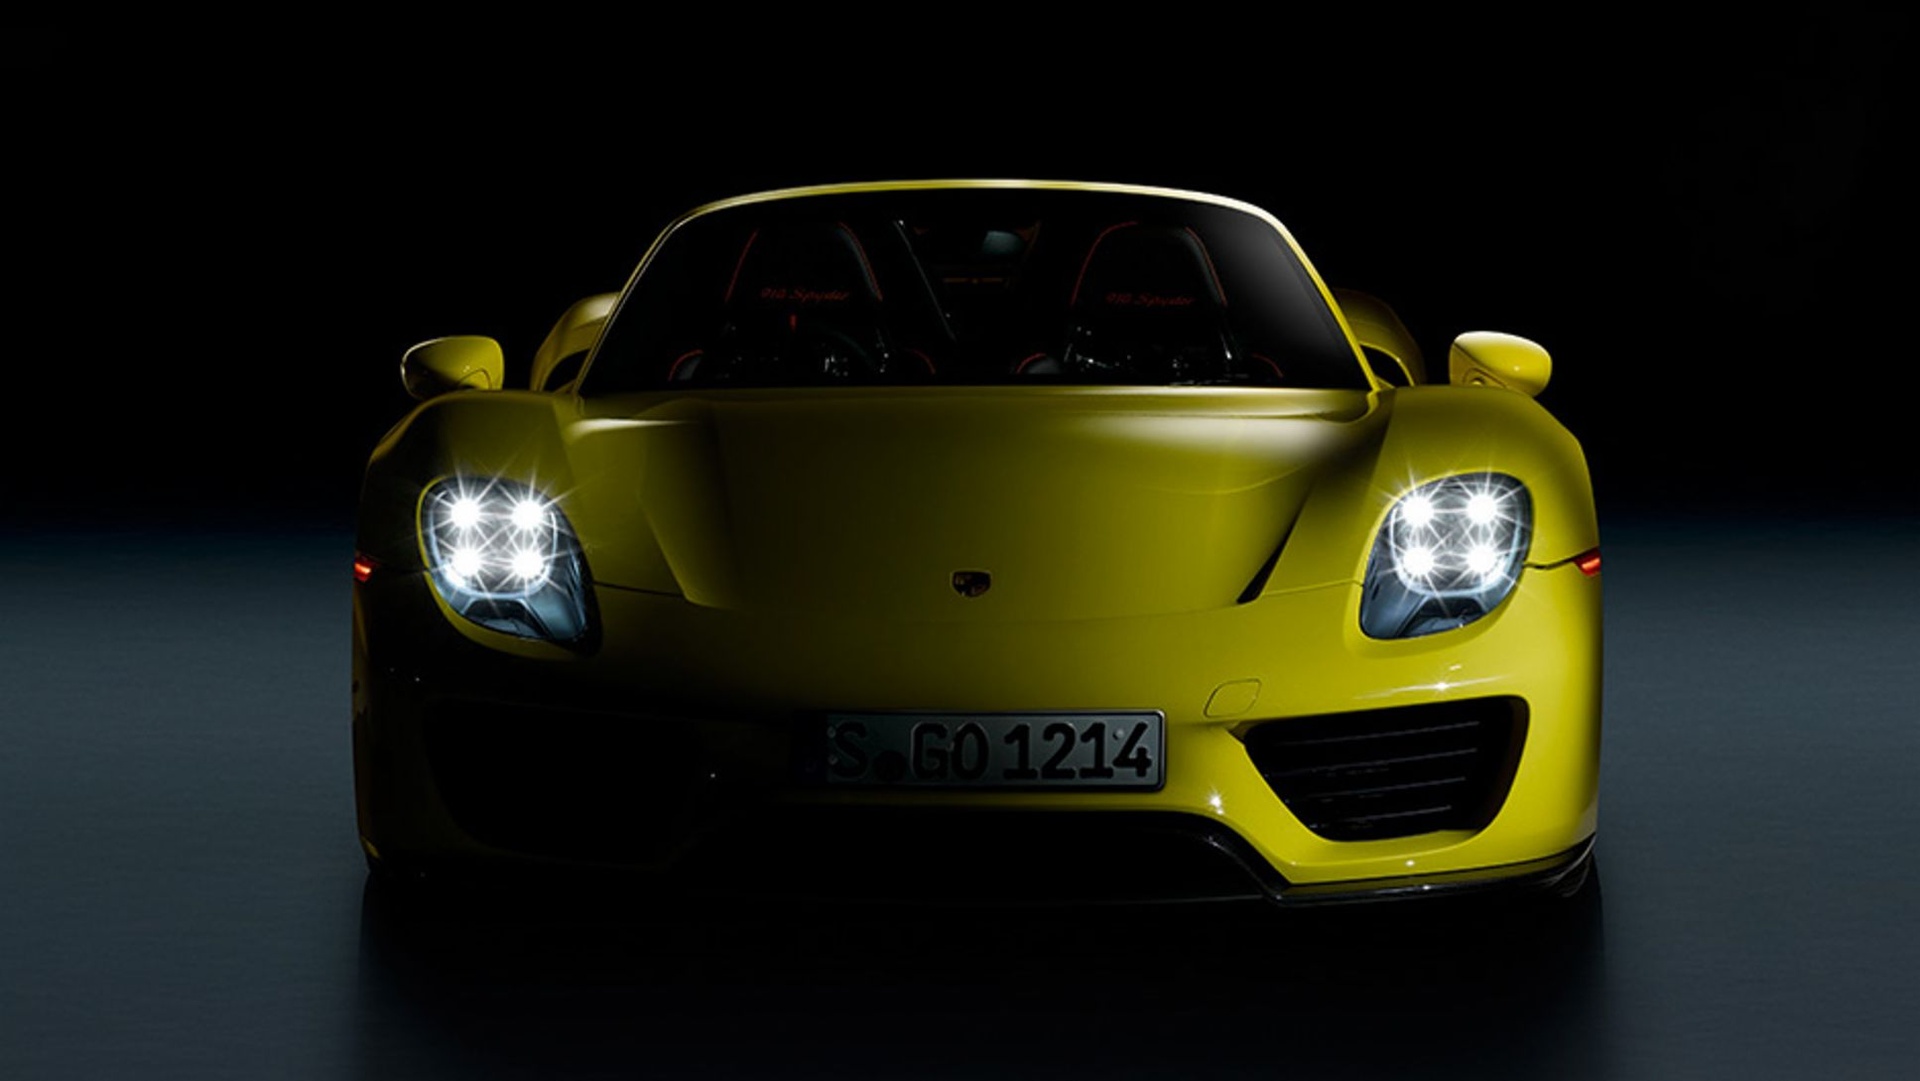 Thiết kế đèn pha từ bốn chấm độc lạ nhà Porsche